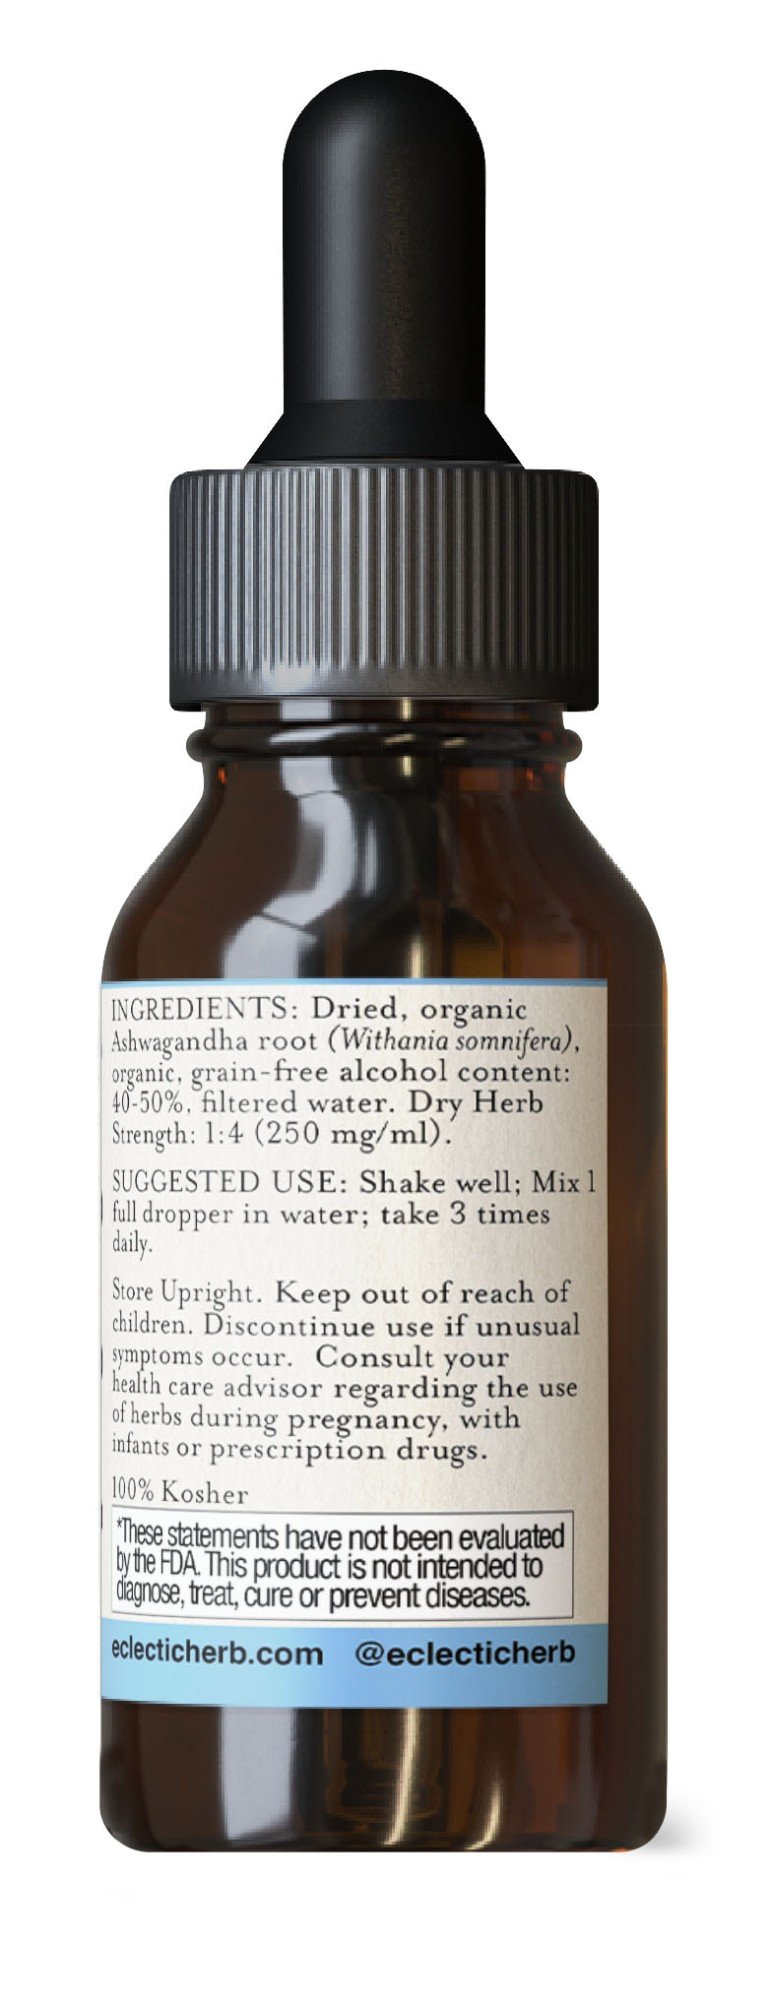 Eclectic Herb Ashwaghanda Extract 1 oz Liquid